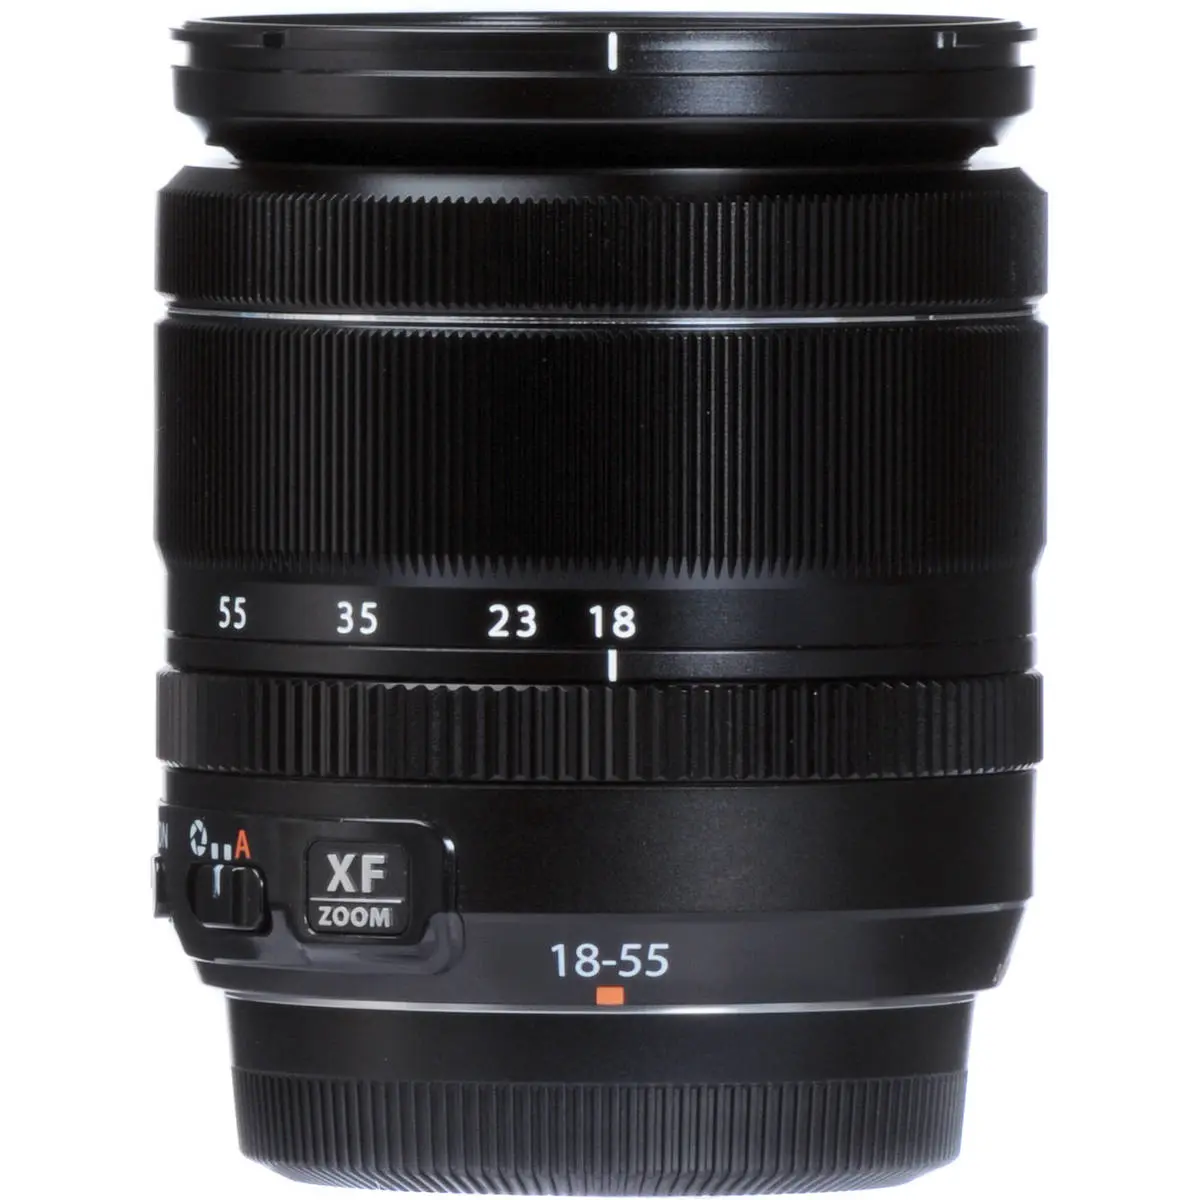 3. Fujifilm FUJINON XF 18-55mm F2.8-4 R LM OIS Lens